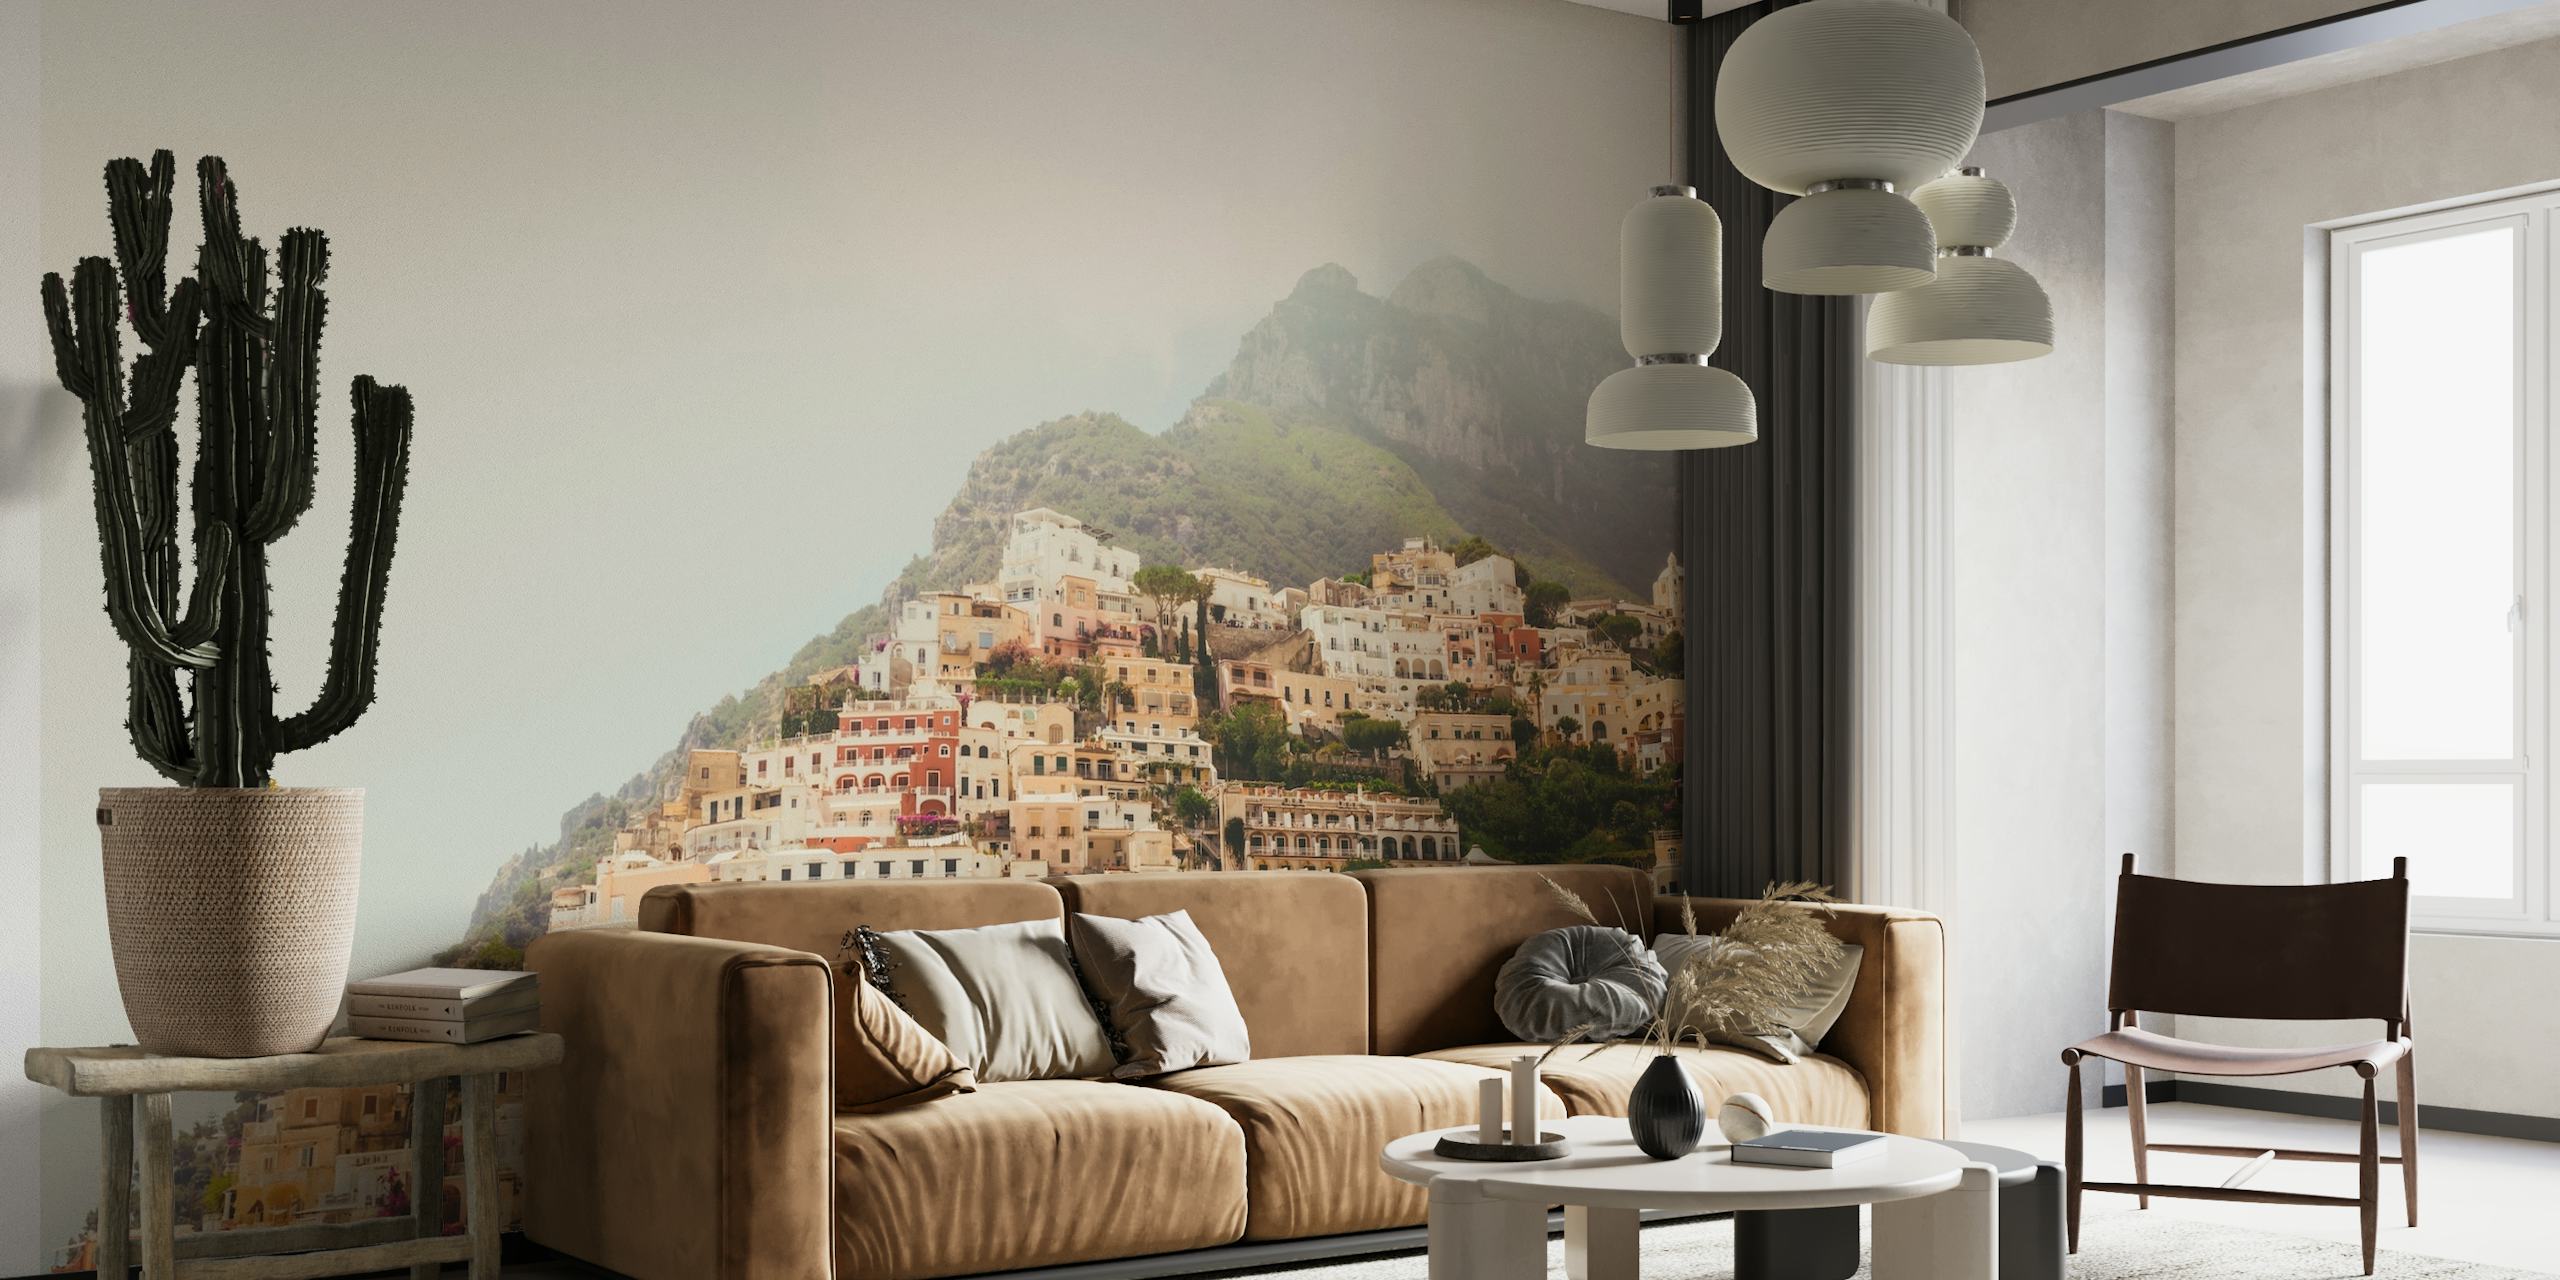 De muurschildering van de Amalfikust met pastelkleurige huizen op kliffen